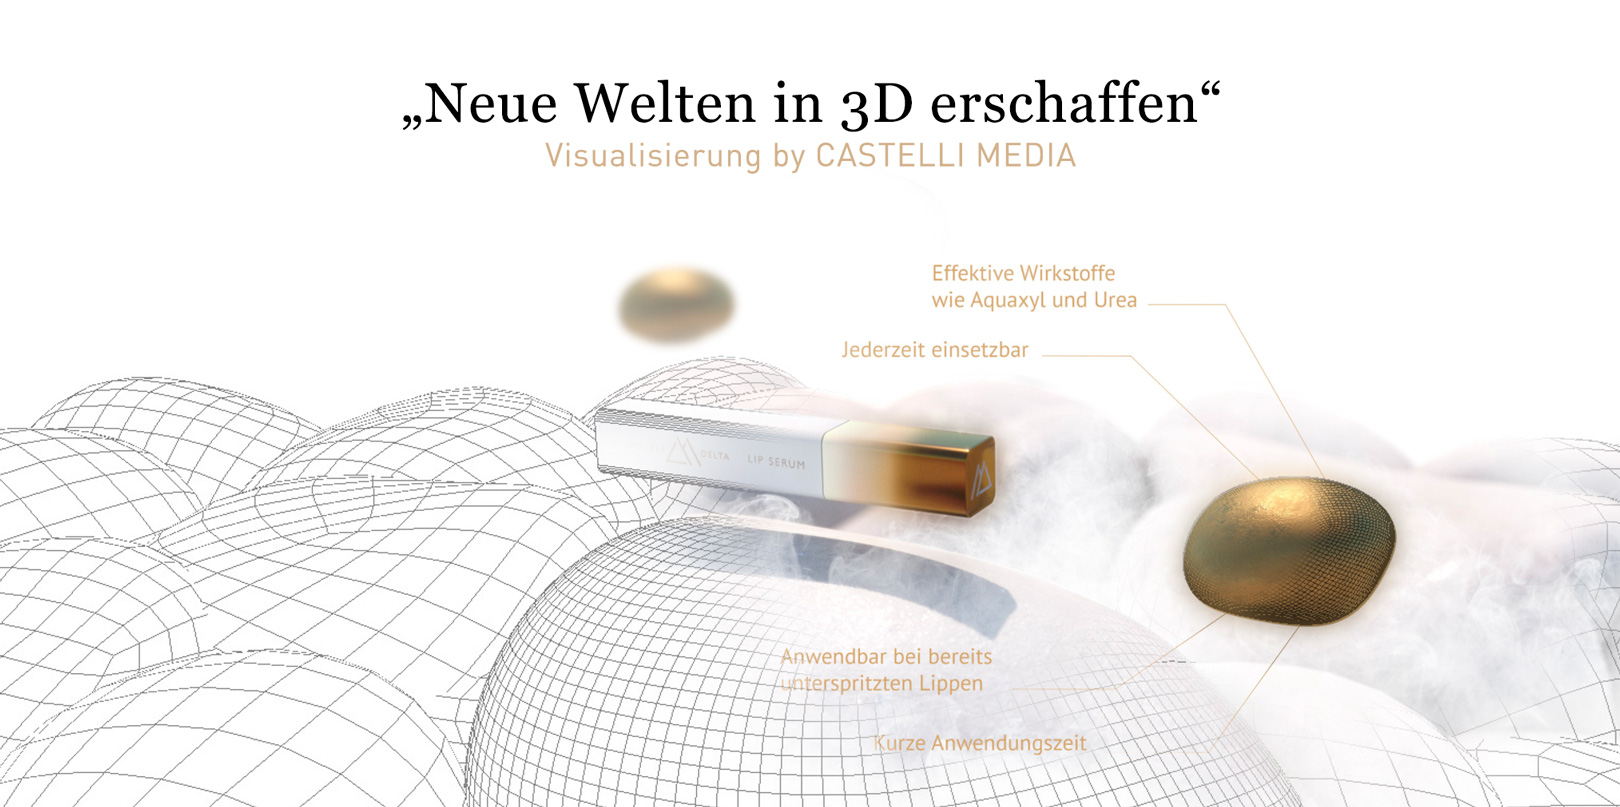 3D visualisierung by castelli media für DoubleDelta Cosmetics